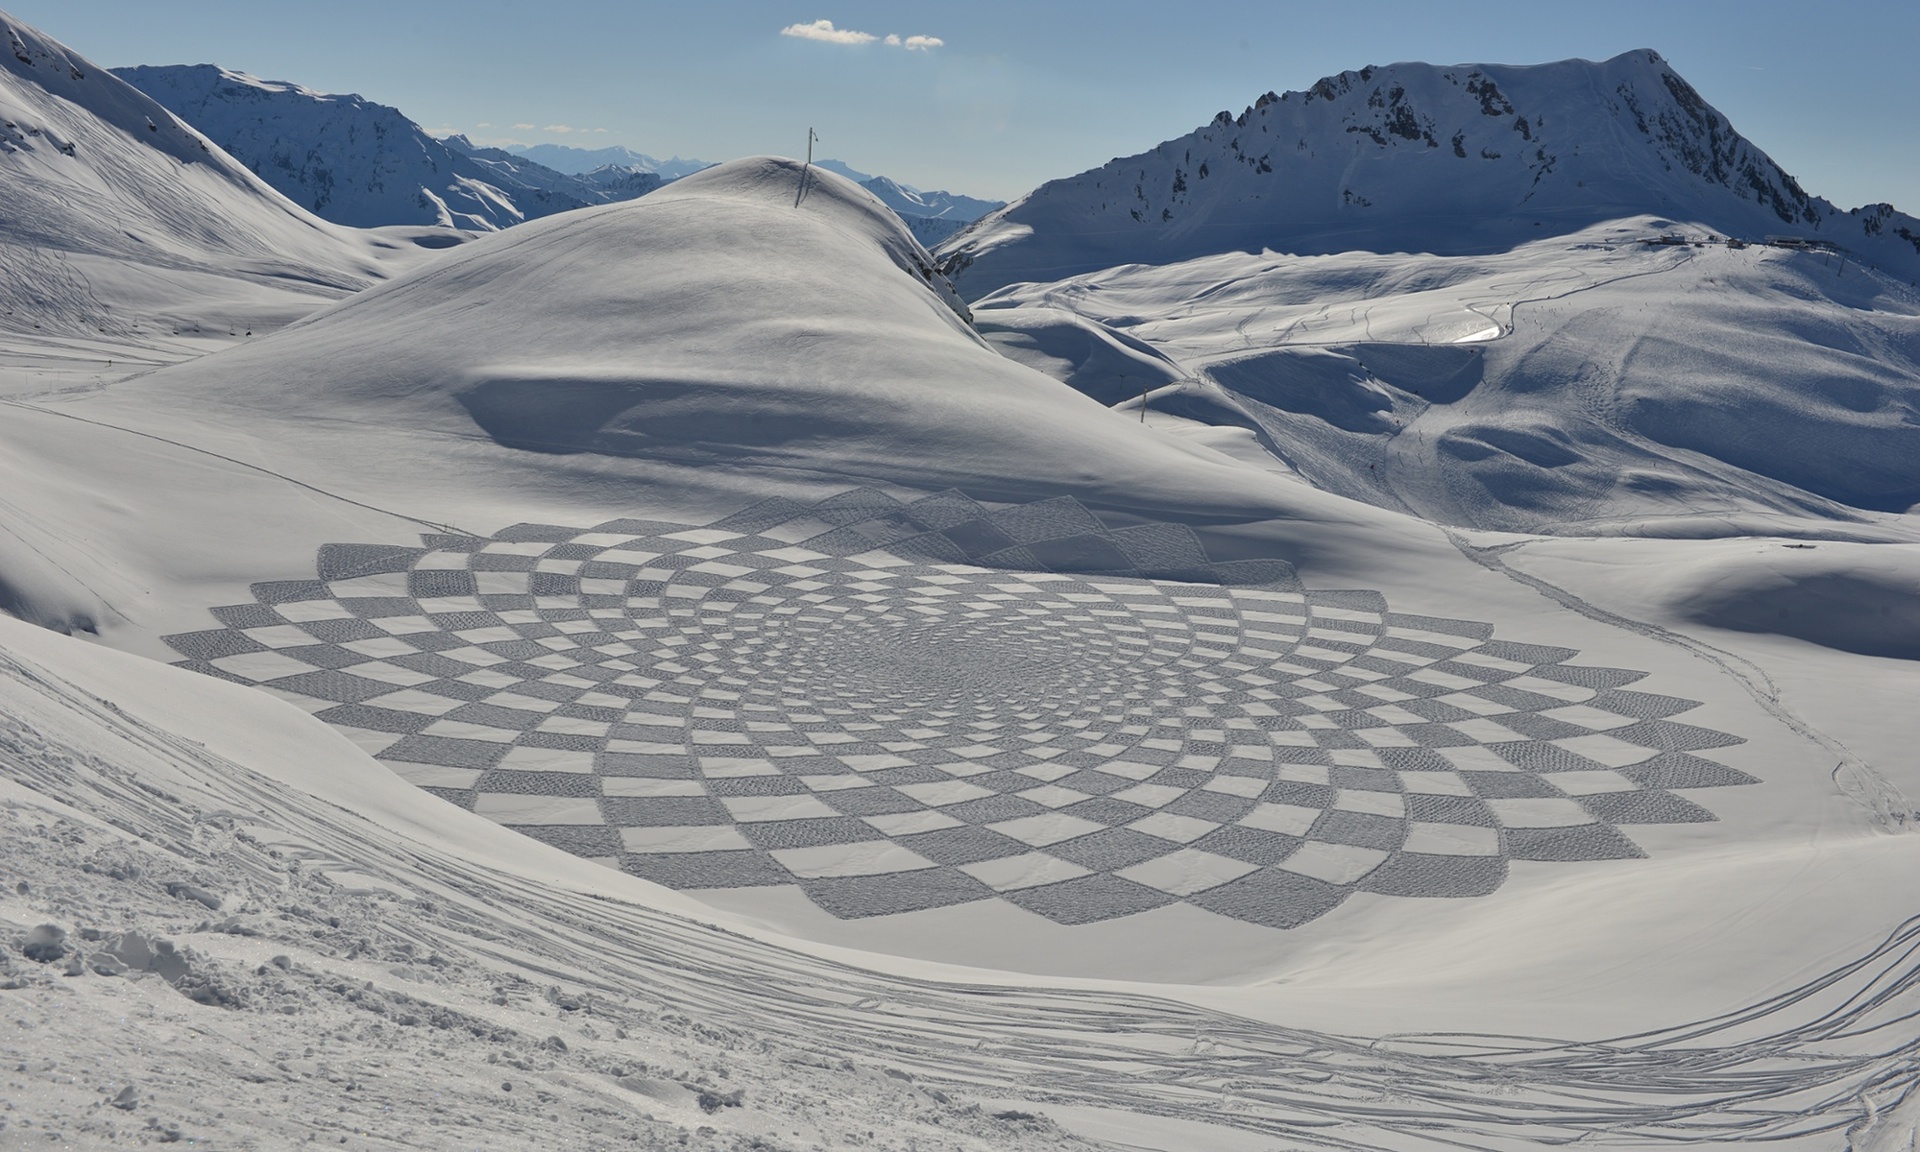 幾何圖形構成的雪地畫。圖取自Guardian。.jpeg